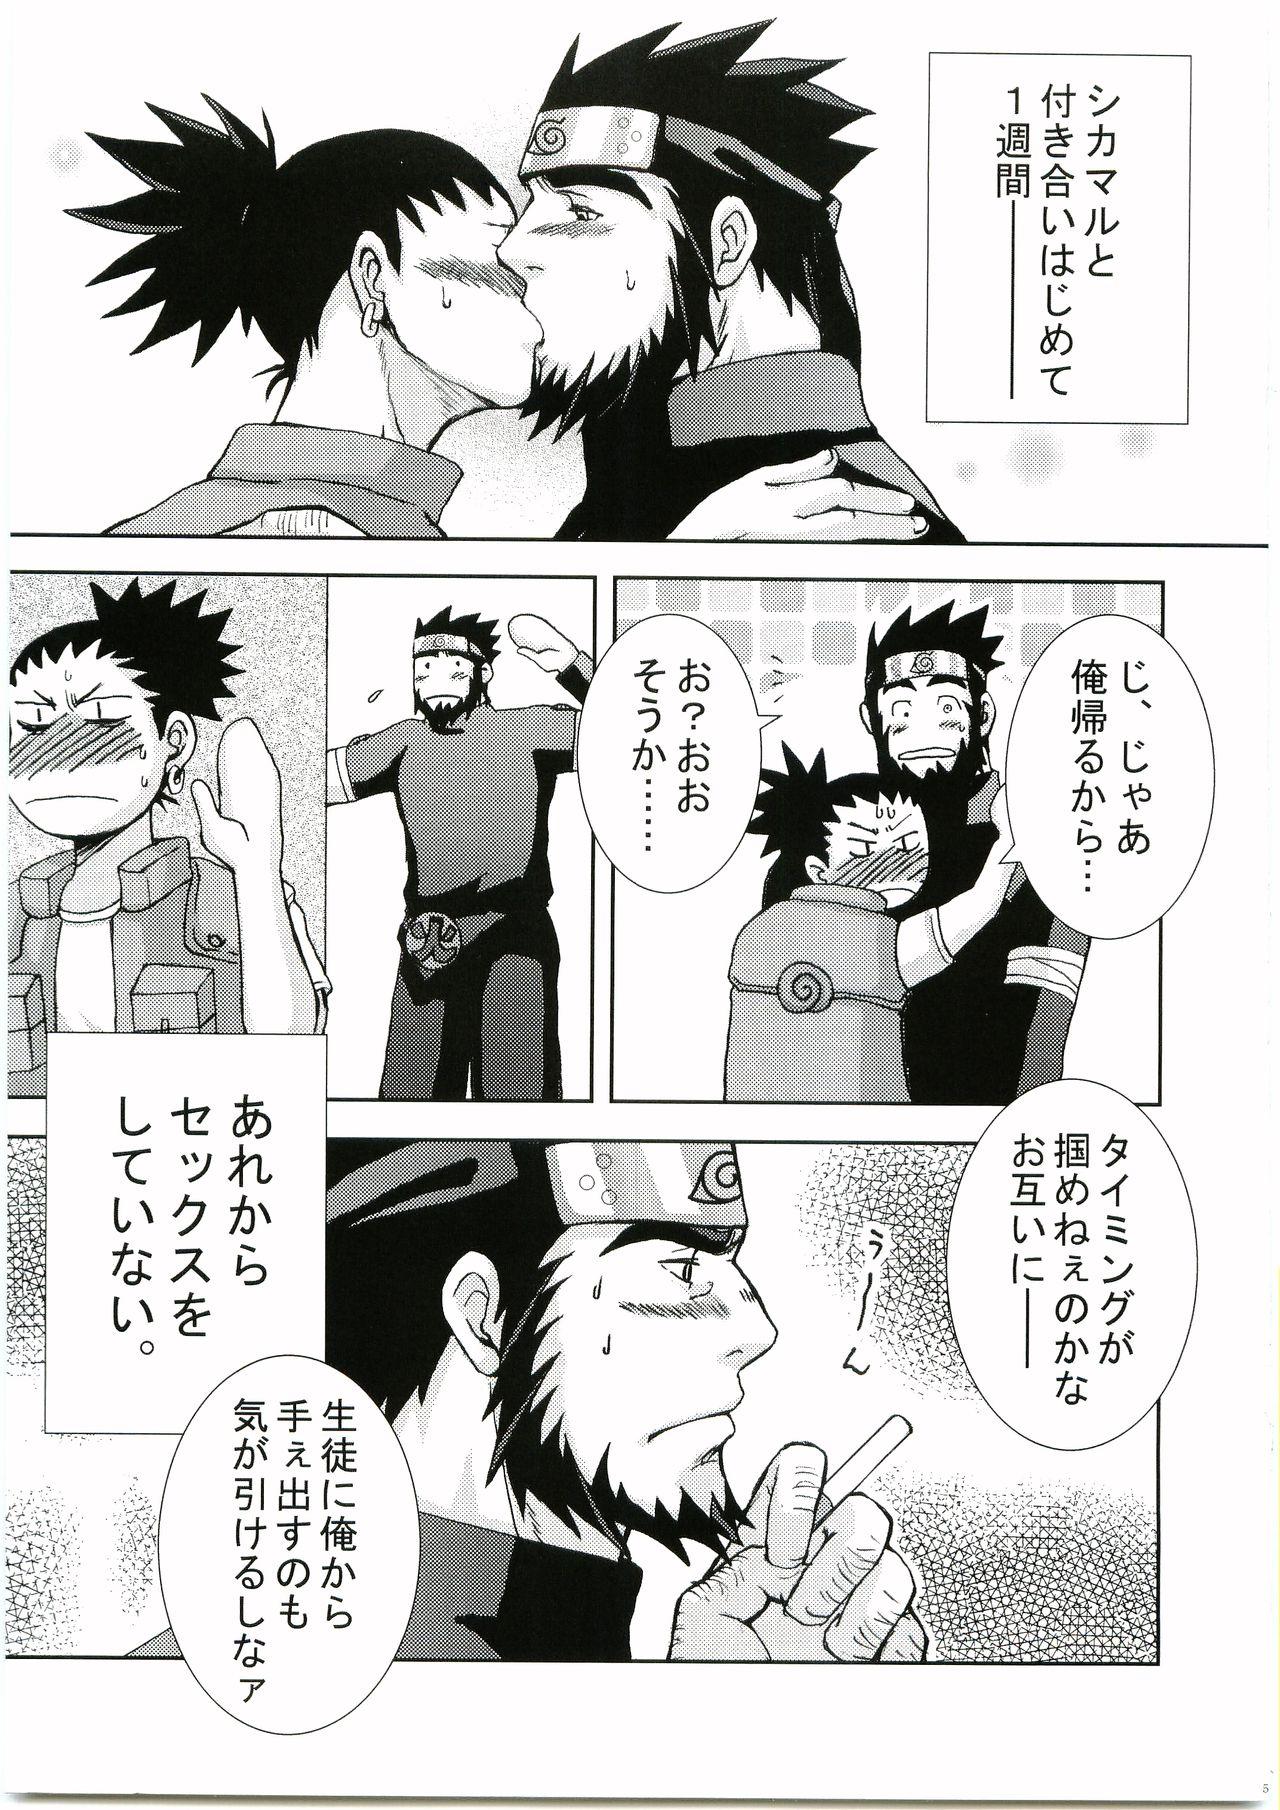 Cavalgando Konoha Hige Jouka Ni - Naruto Usa - Page 4